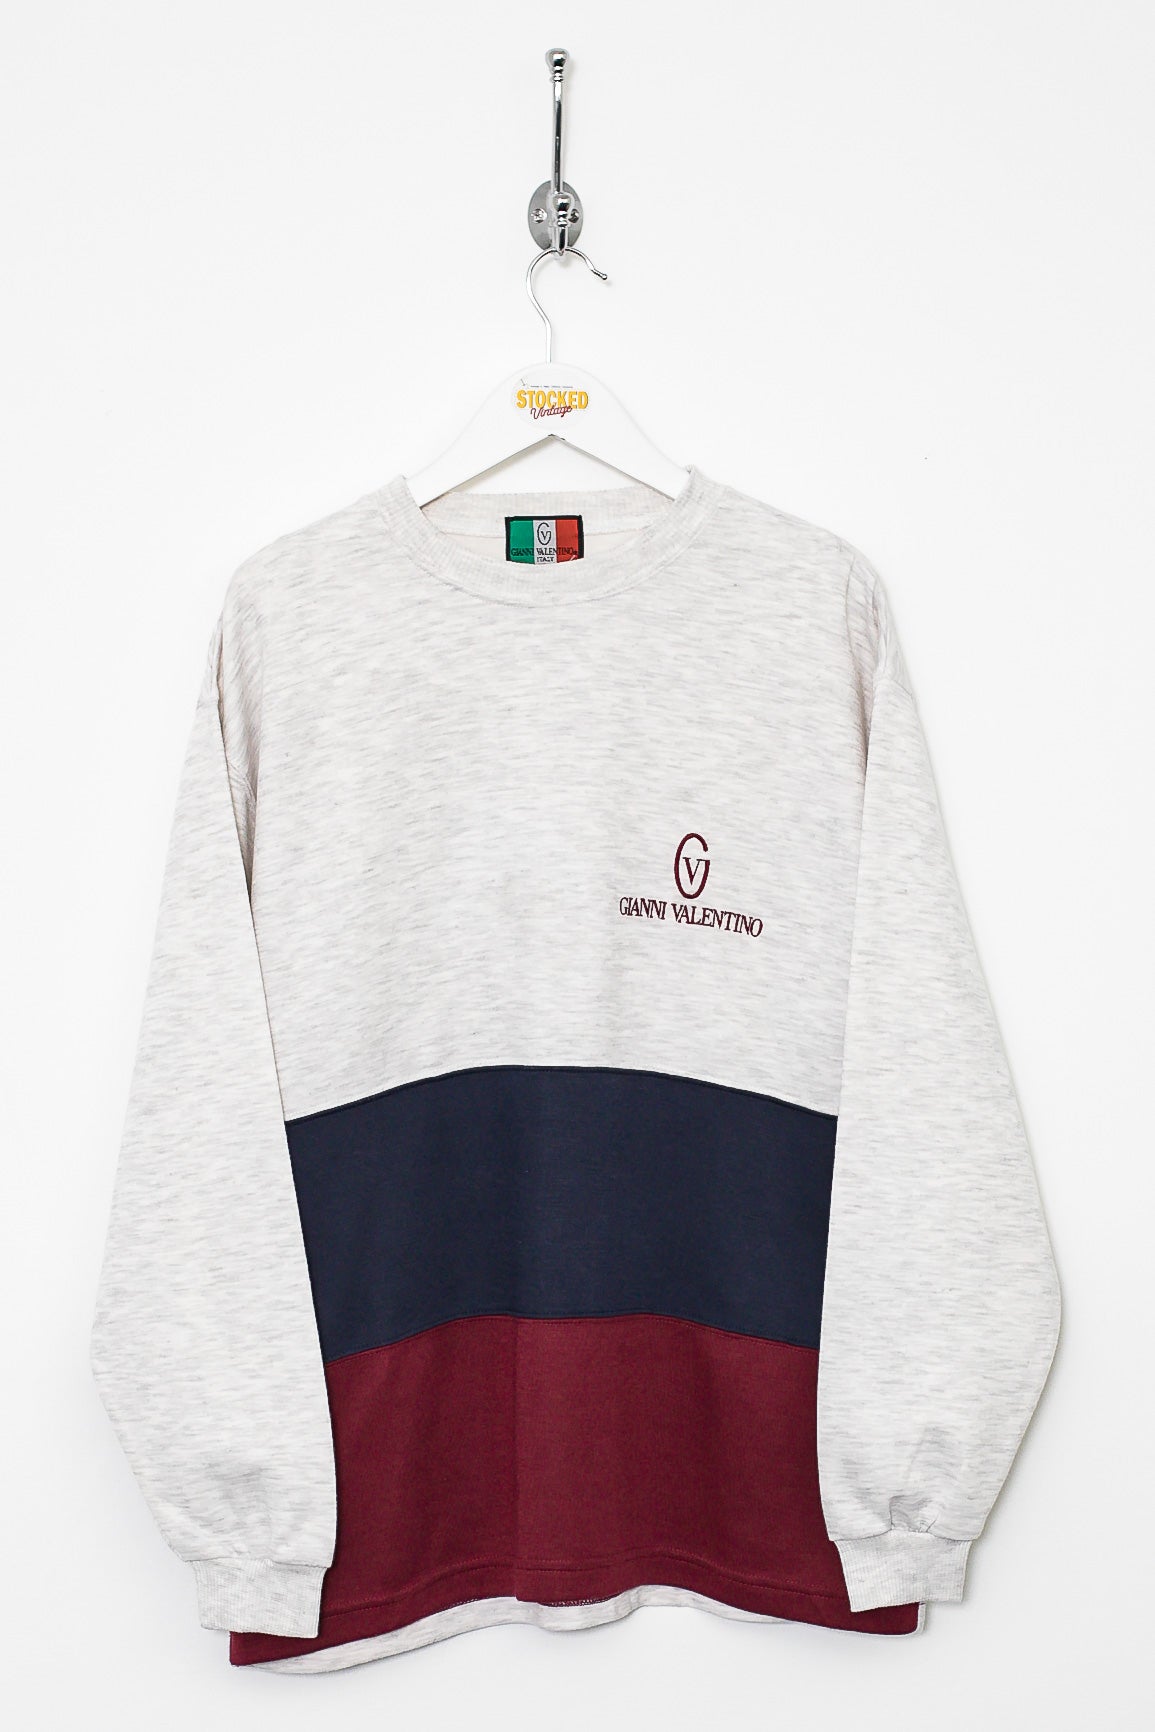 00s Gianni Valentino Sweatshirt (S)